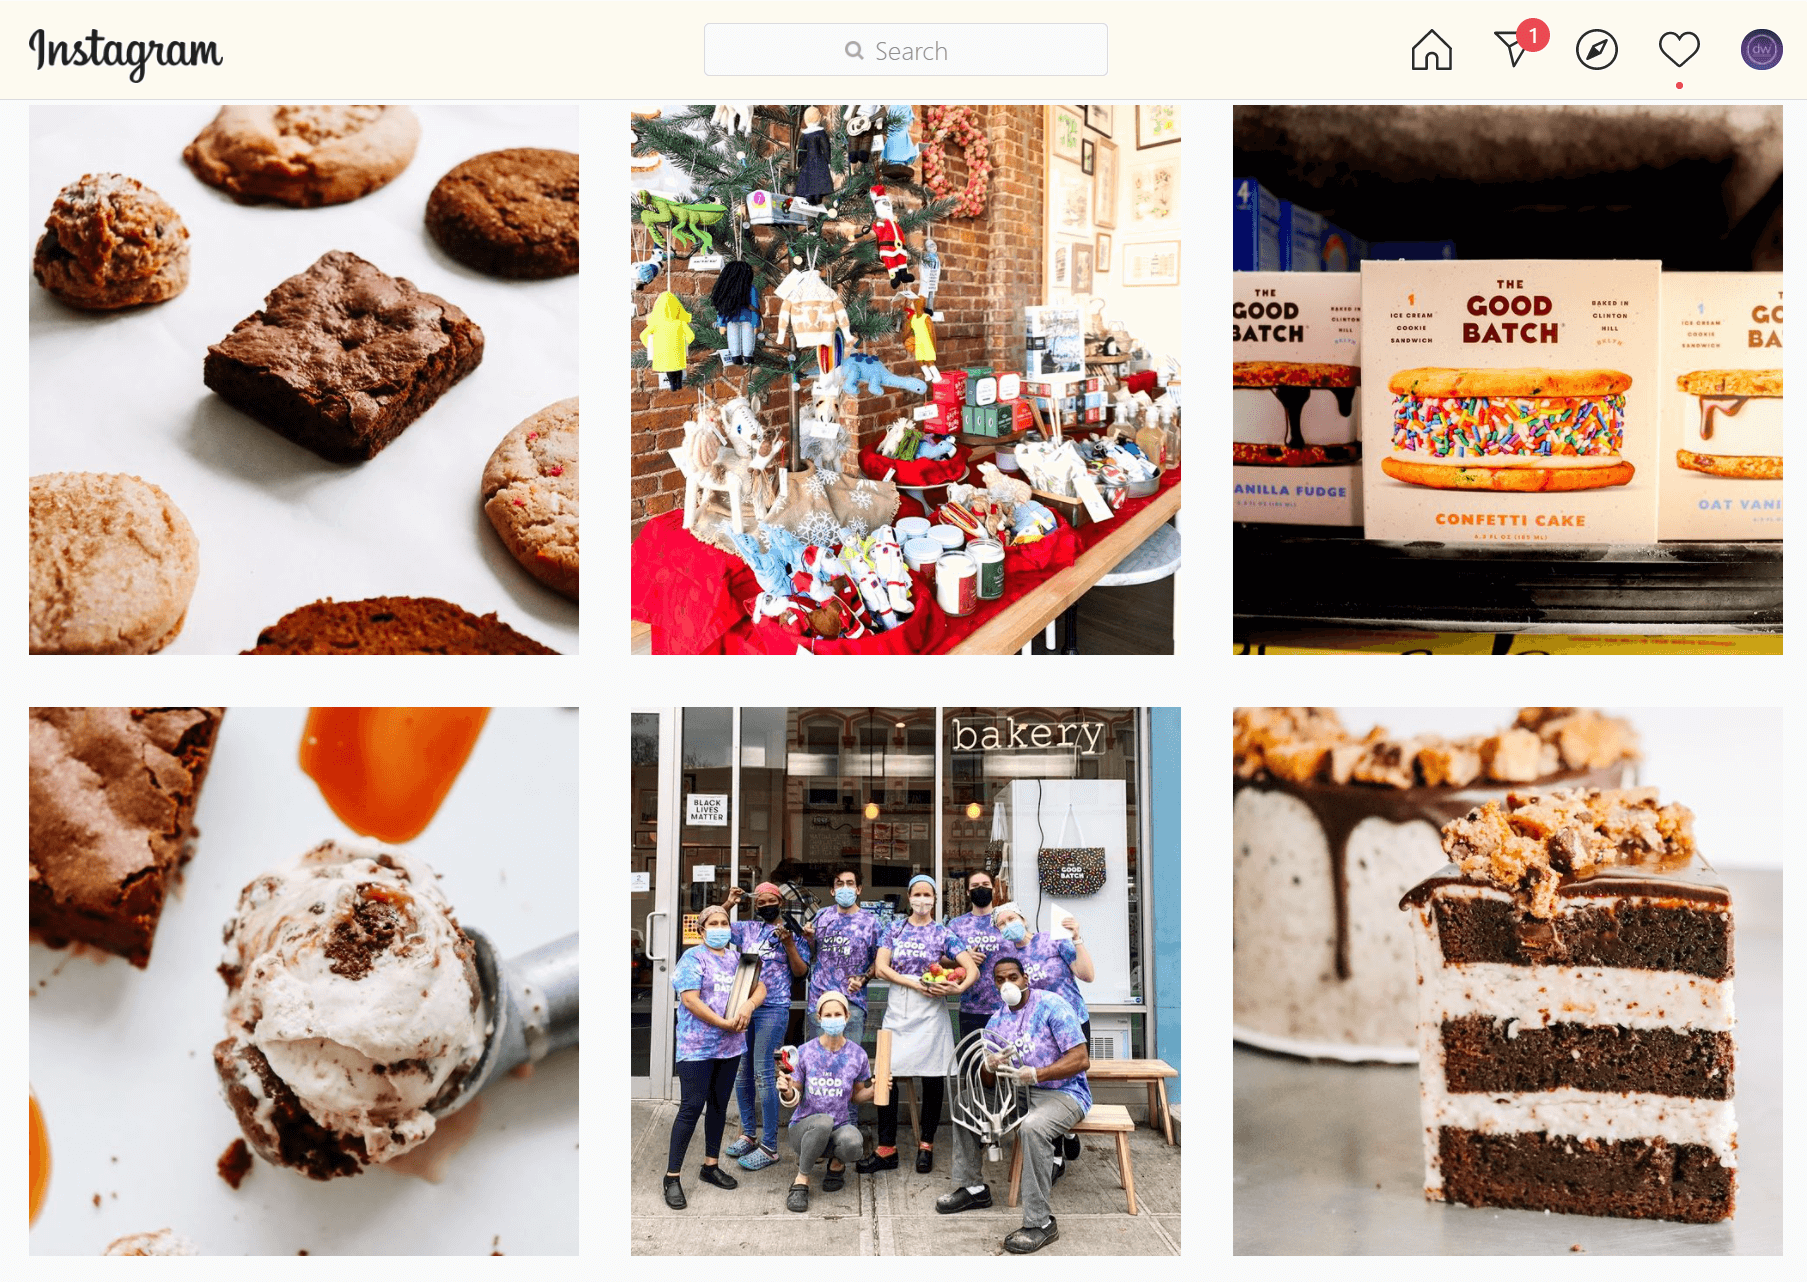 Idéias de marketing de café no Instagram: fotos de comida.